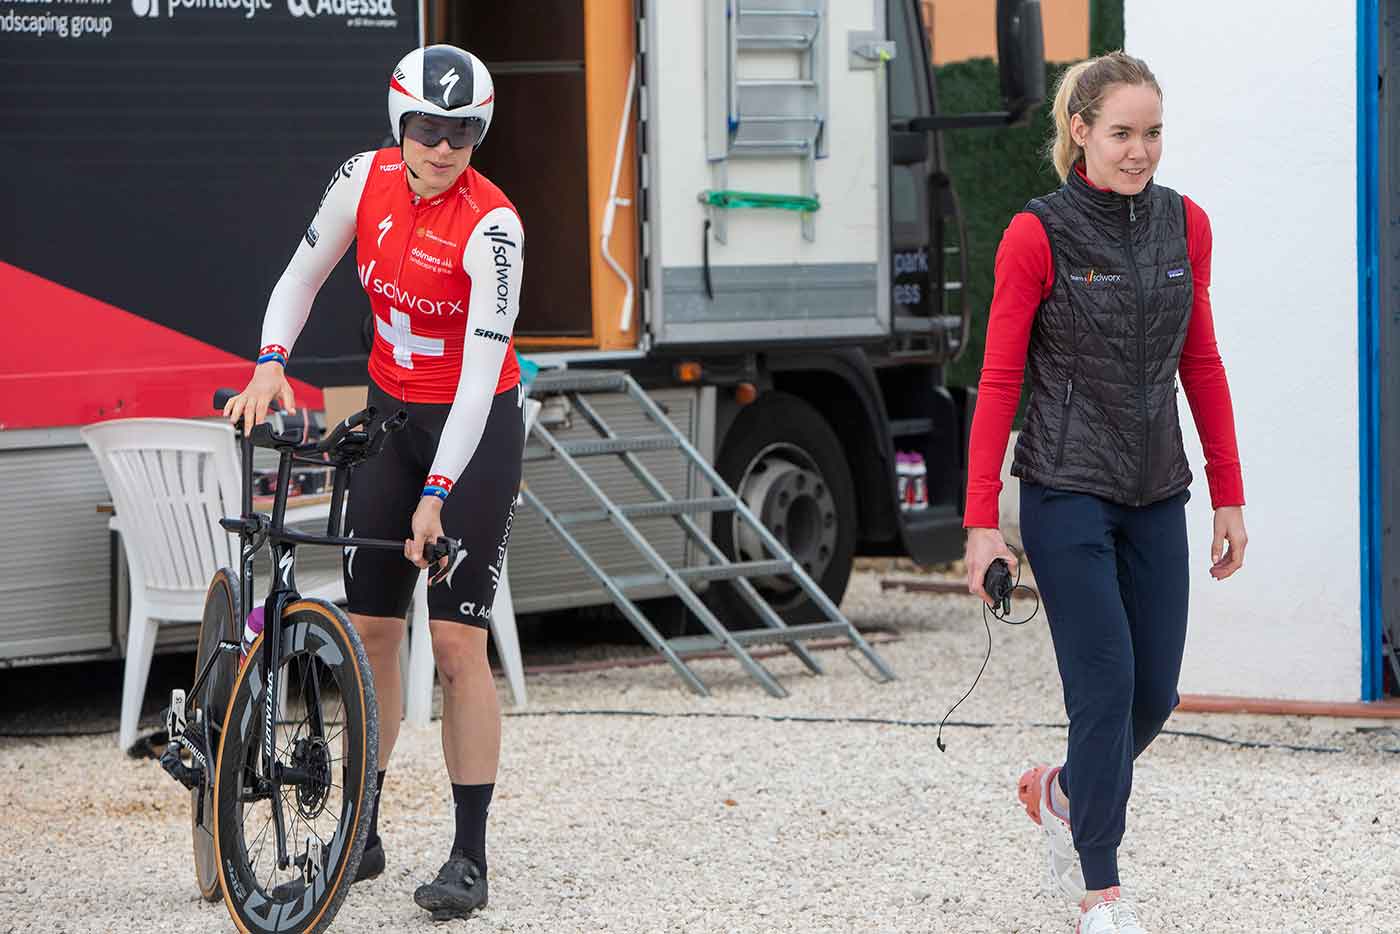 Als coach in het vrouwenwielrennen, heb ik geleerd om meer op intuïtie te vertrouwen - Anna van der Breggen, interview deel 1 - Johan Cruyff Institute